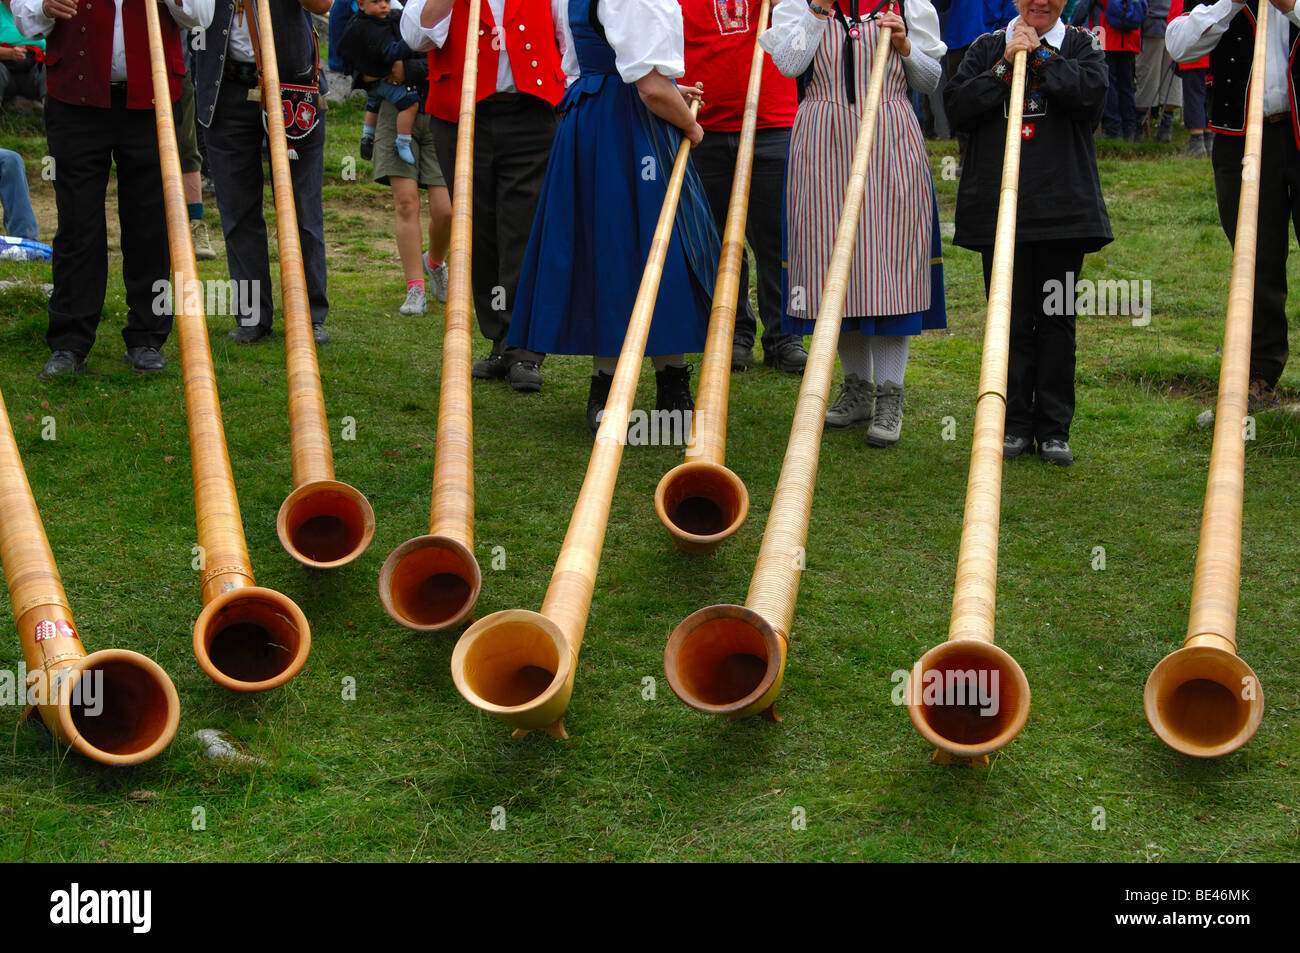 Swiss Alphorns at a Swiss folk festival, Valais, Switzerland Stock Photo